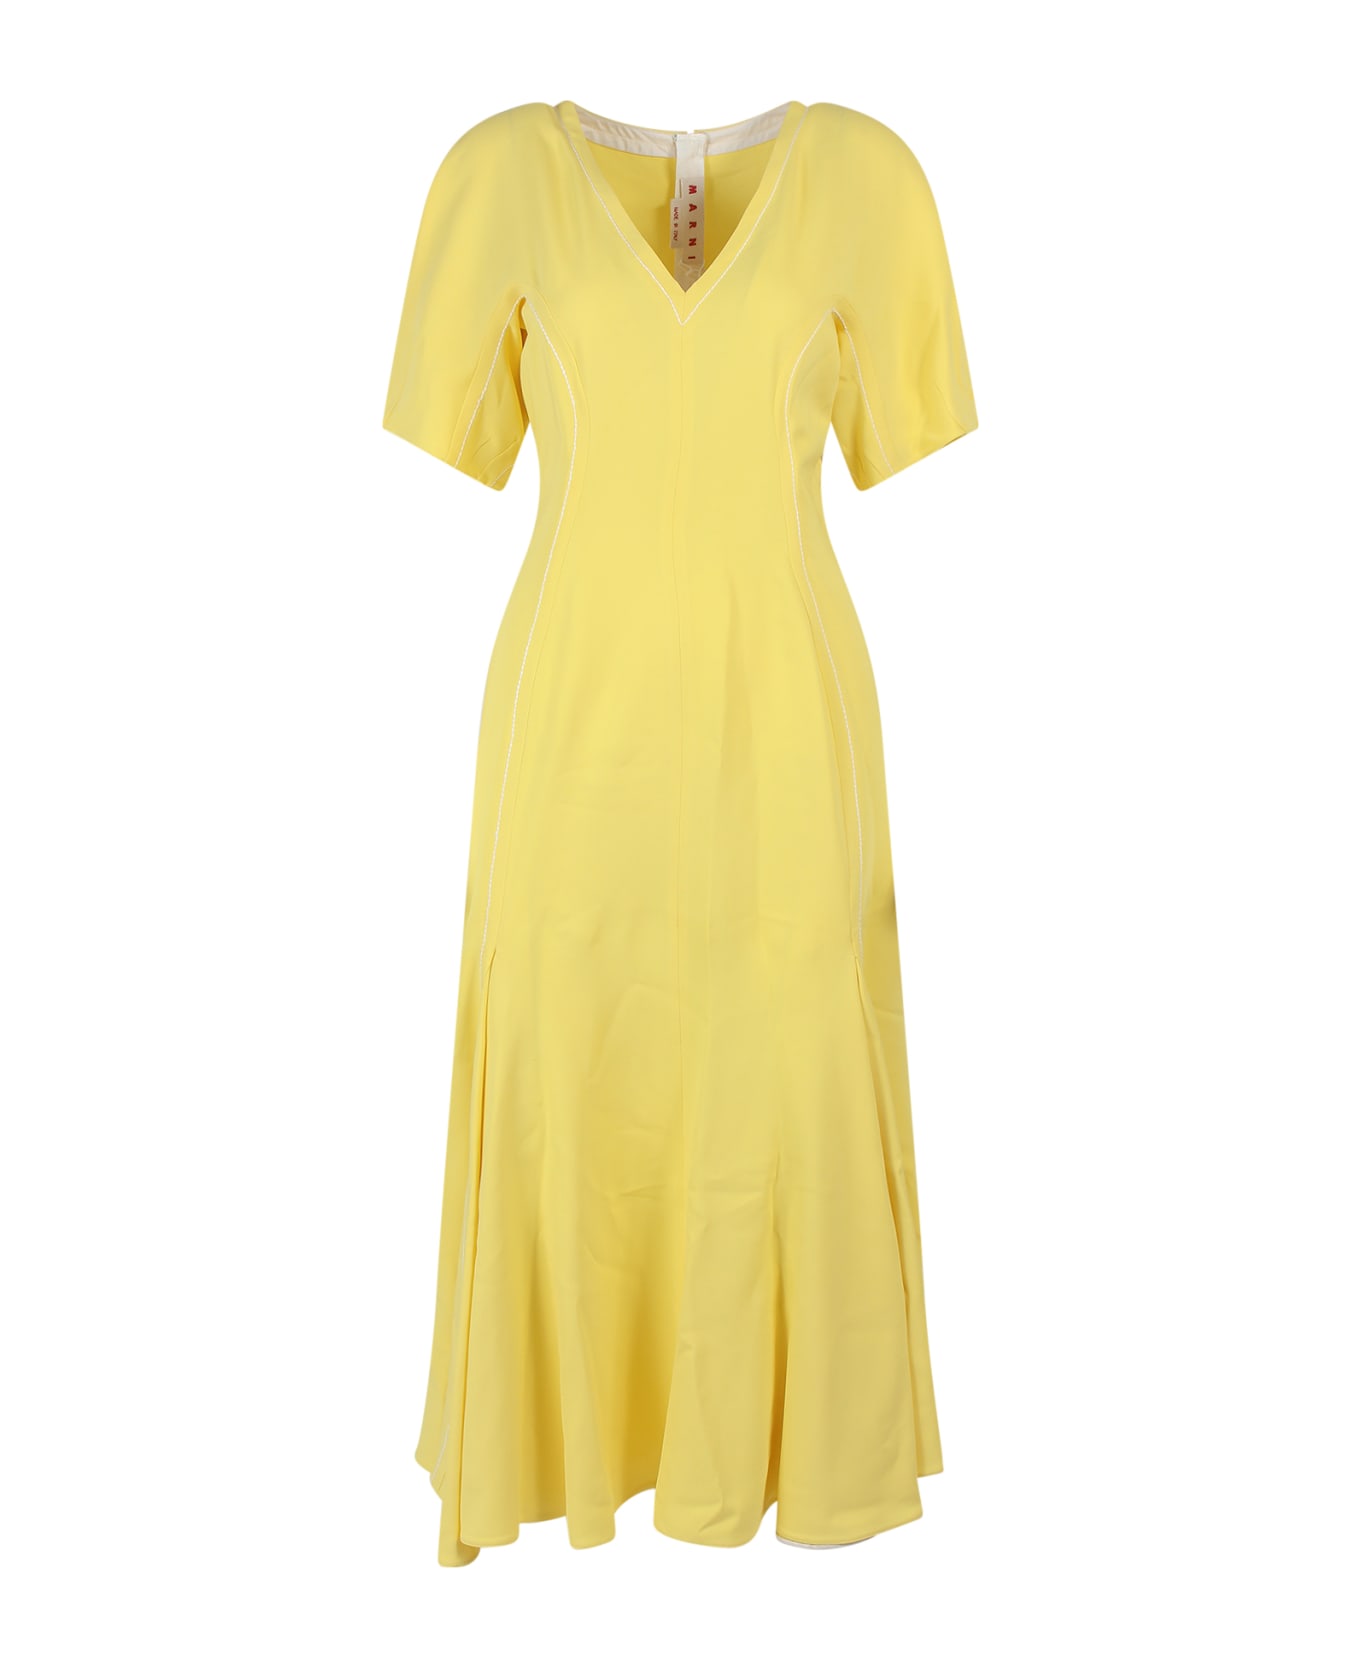 Marni Dress - Yellow